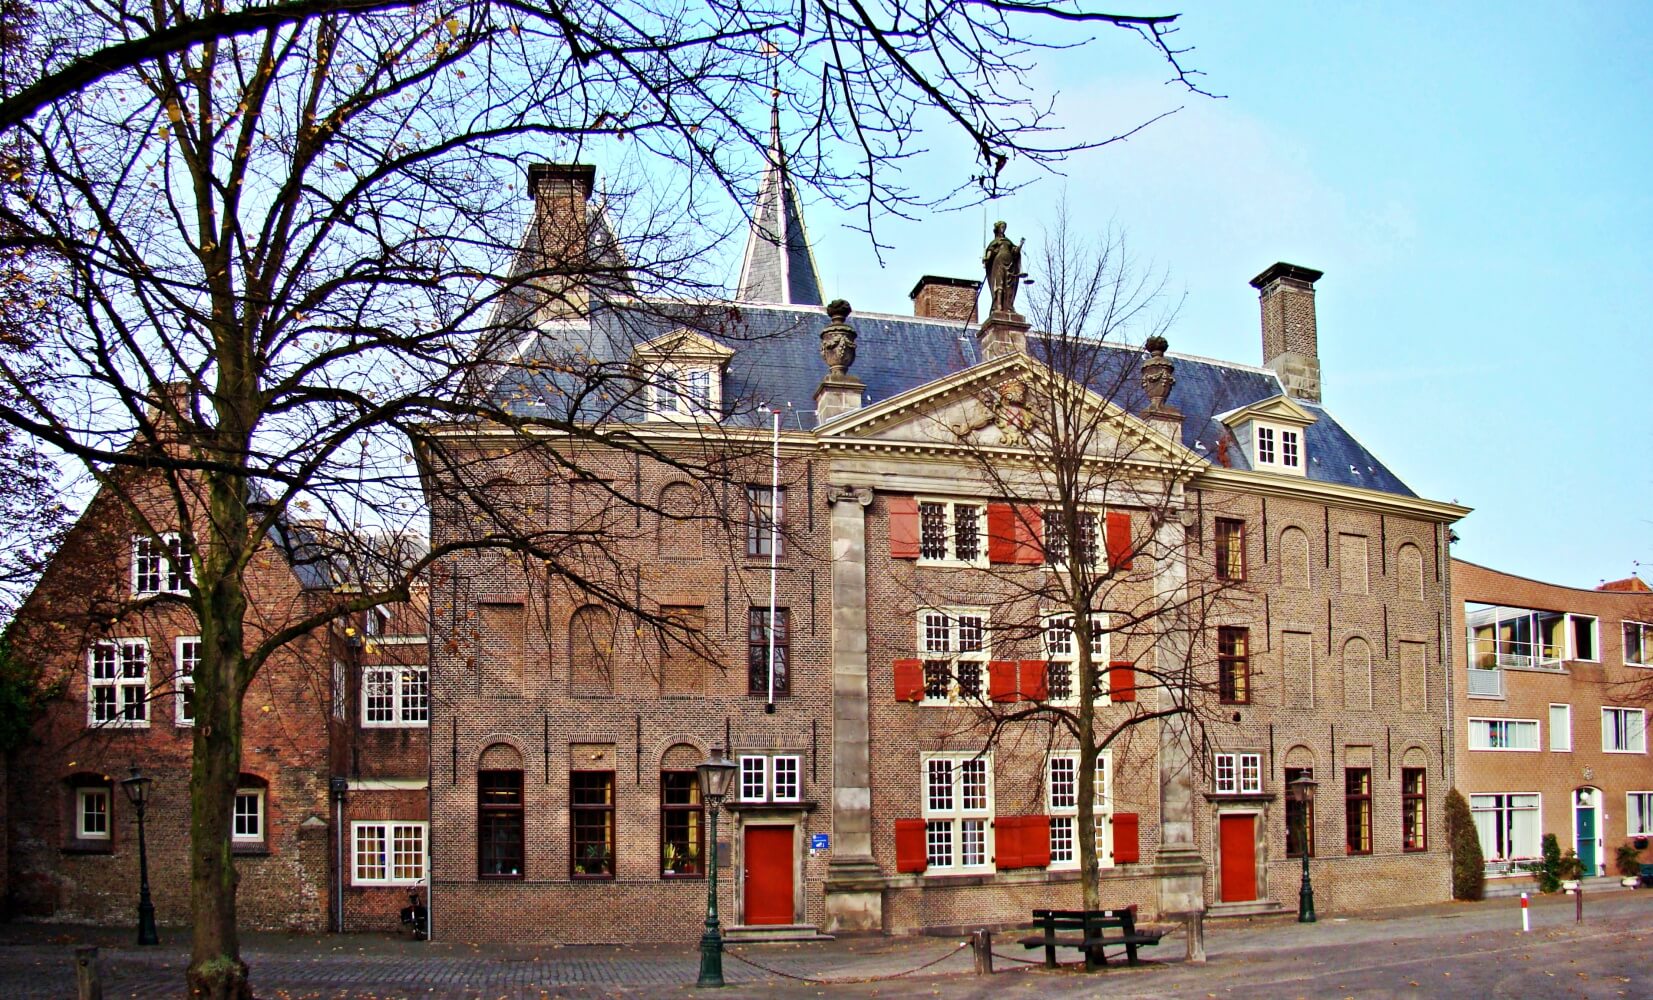 Gravensteen (Leiden)